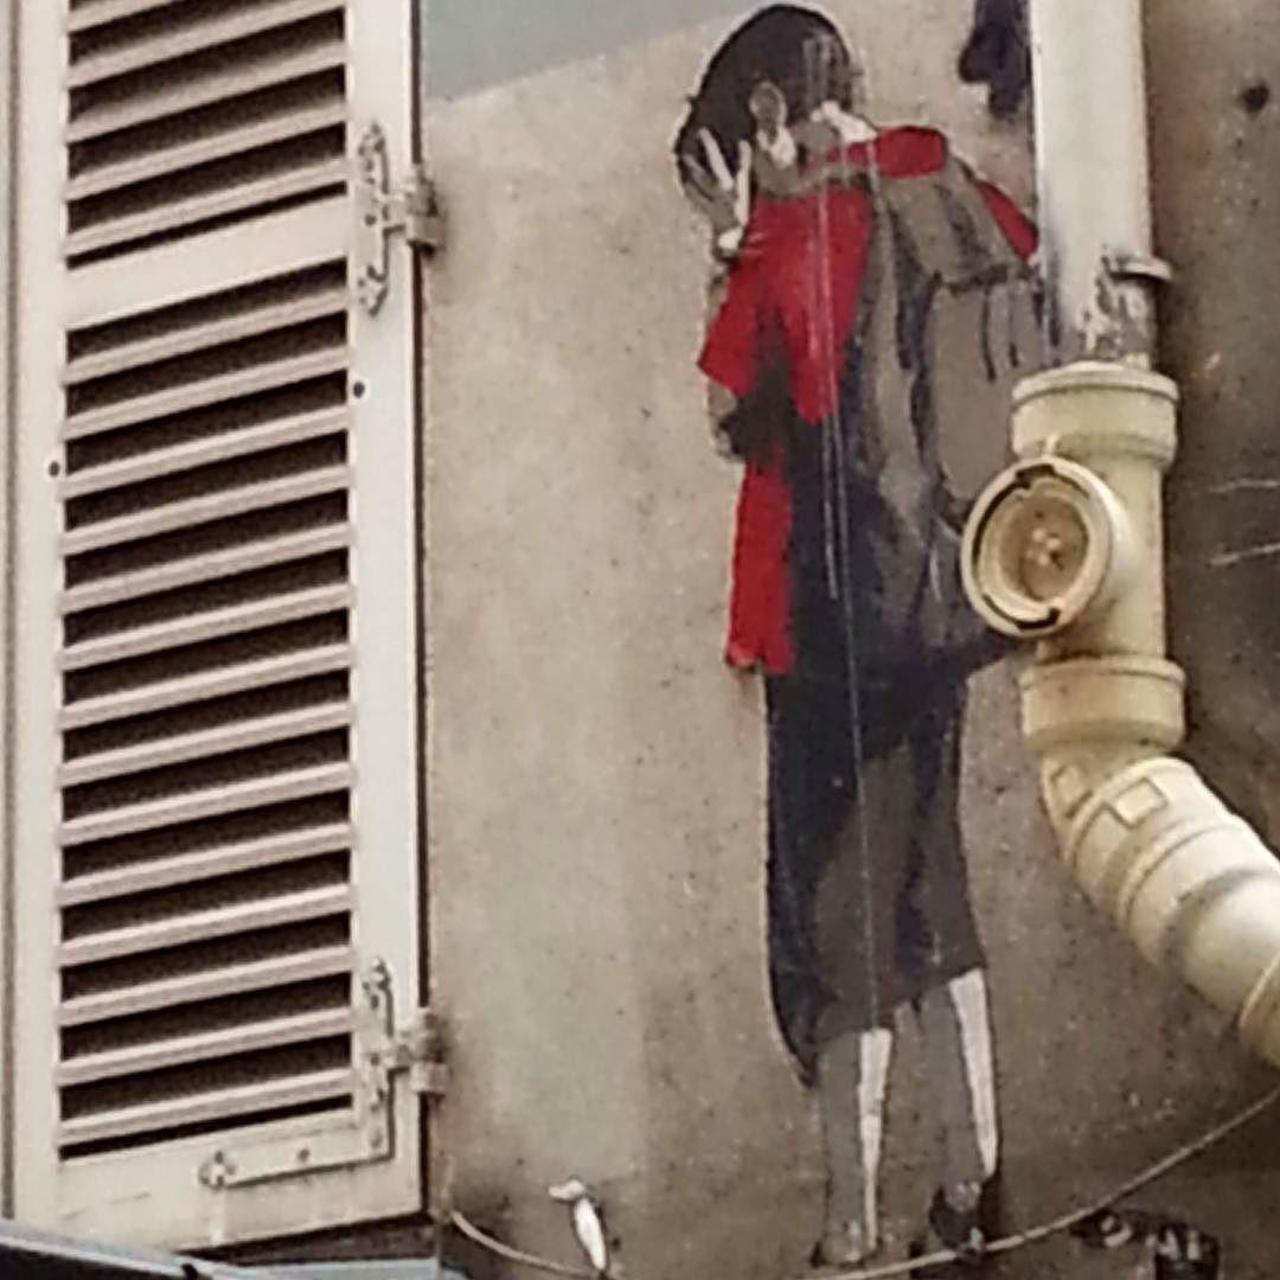 #Paris #graffiti photo by @fotoflaneuse http://ift.tt/1ZP6EIl #StreetArt https://t.co/ZMaIJi0CzU